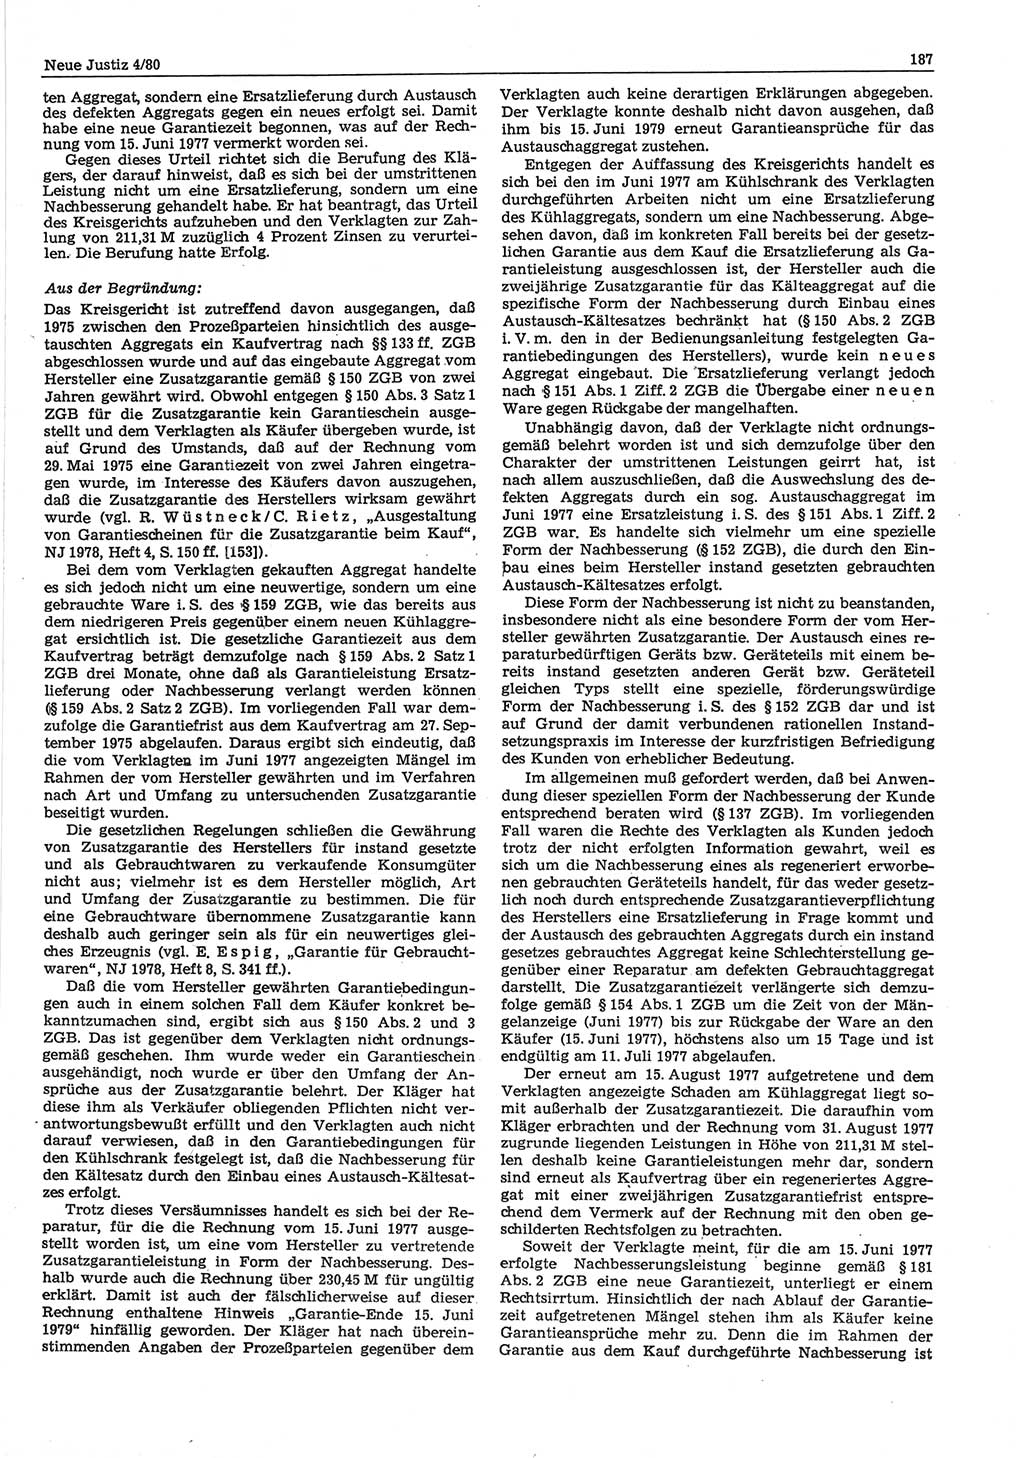 Neue Justiz (NJ), Zeitschrift für sozialistisches Recht und Gesetzlichkeit [Deutsche Demokratische Republik (DDR)], 34. Jahrgang 1980, Seite 187 (NJ DDR 1980, S. 187)